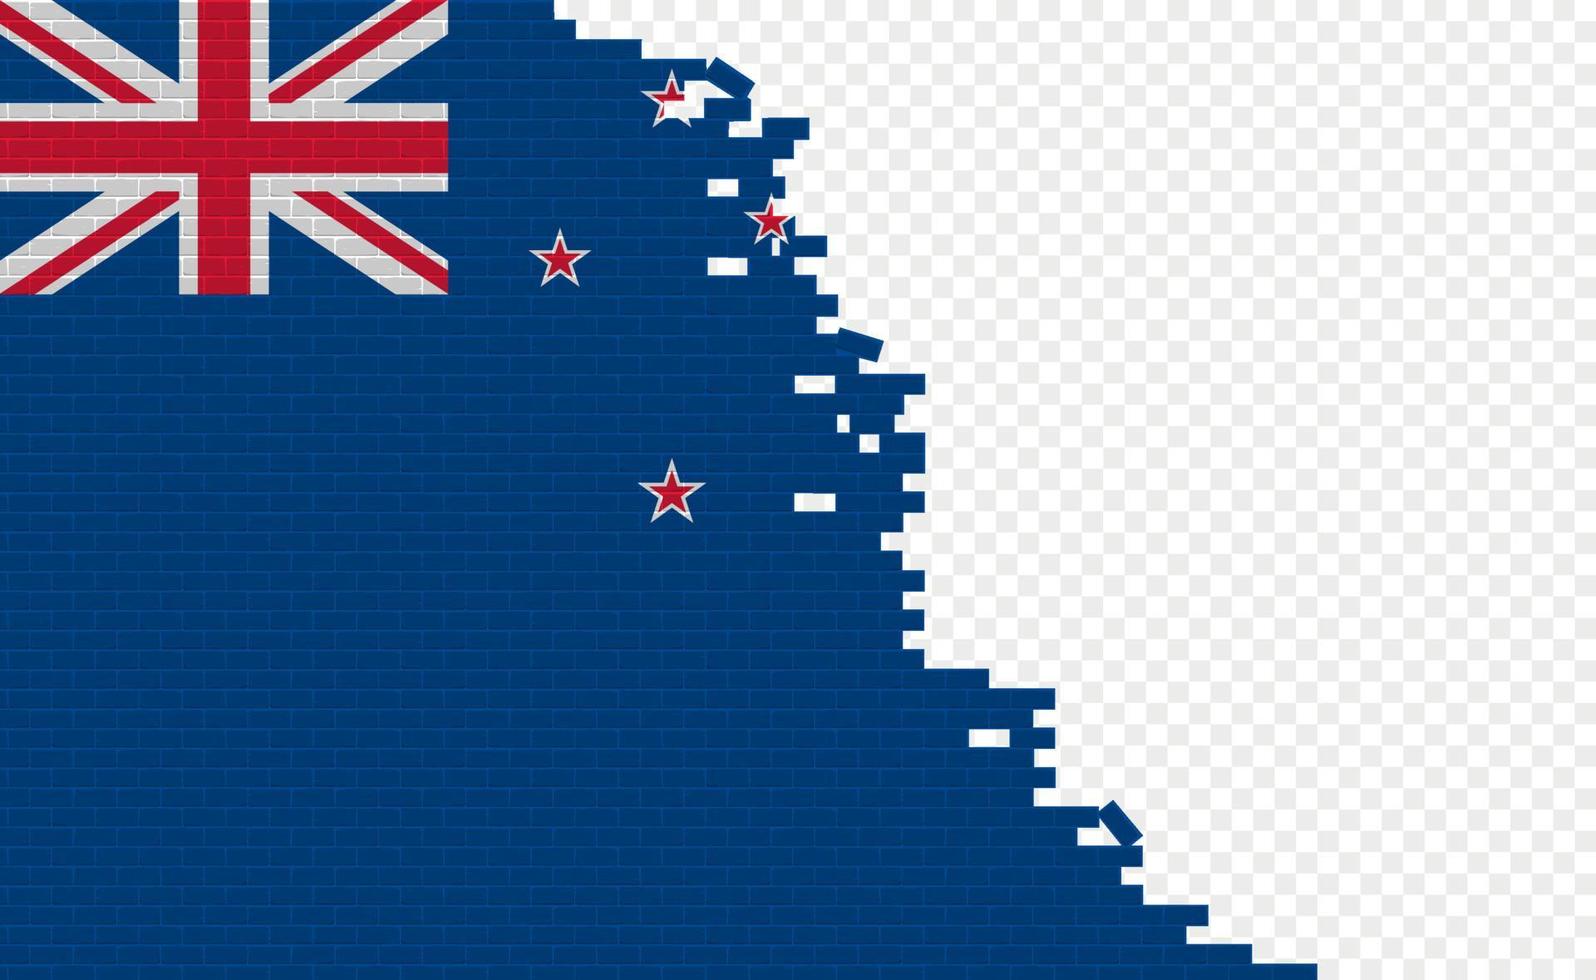 drapeau de la nouvelle-zélande sur le mur de briques cassées. champ de drapeau vide d'un autre pays. comparaison de pays. édition facile et vecteur en groupes.